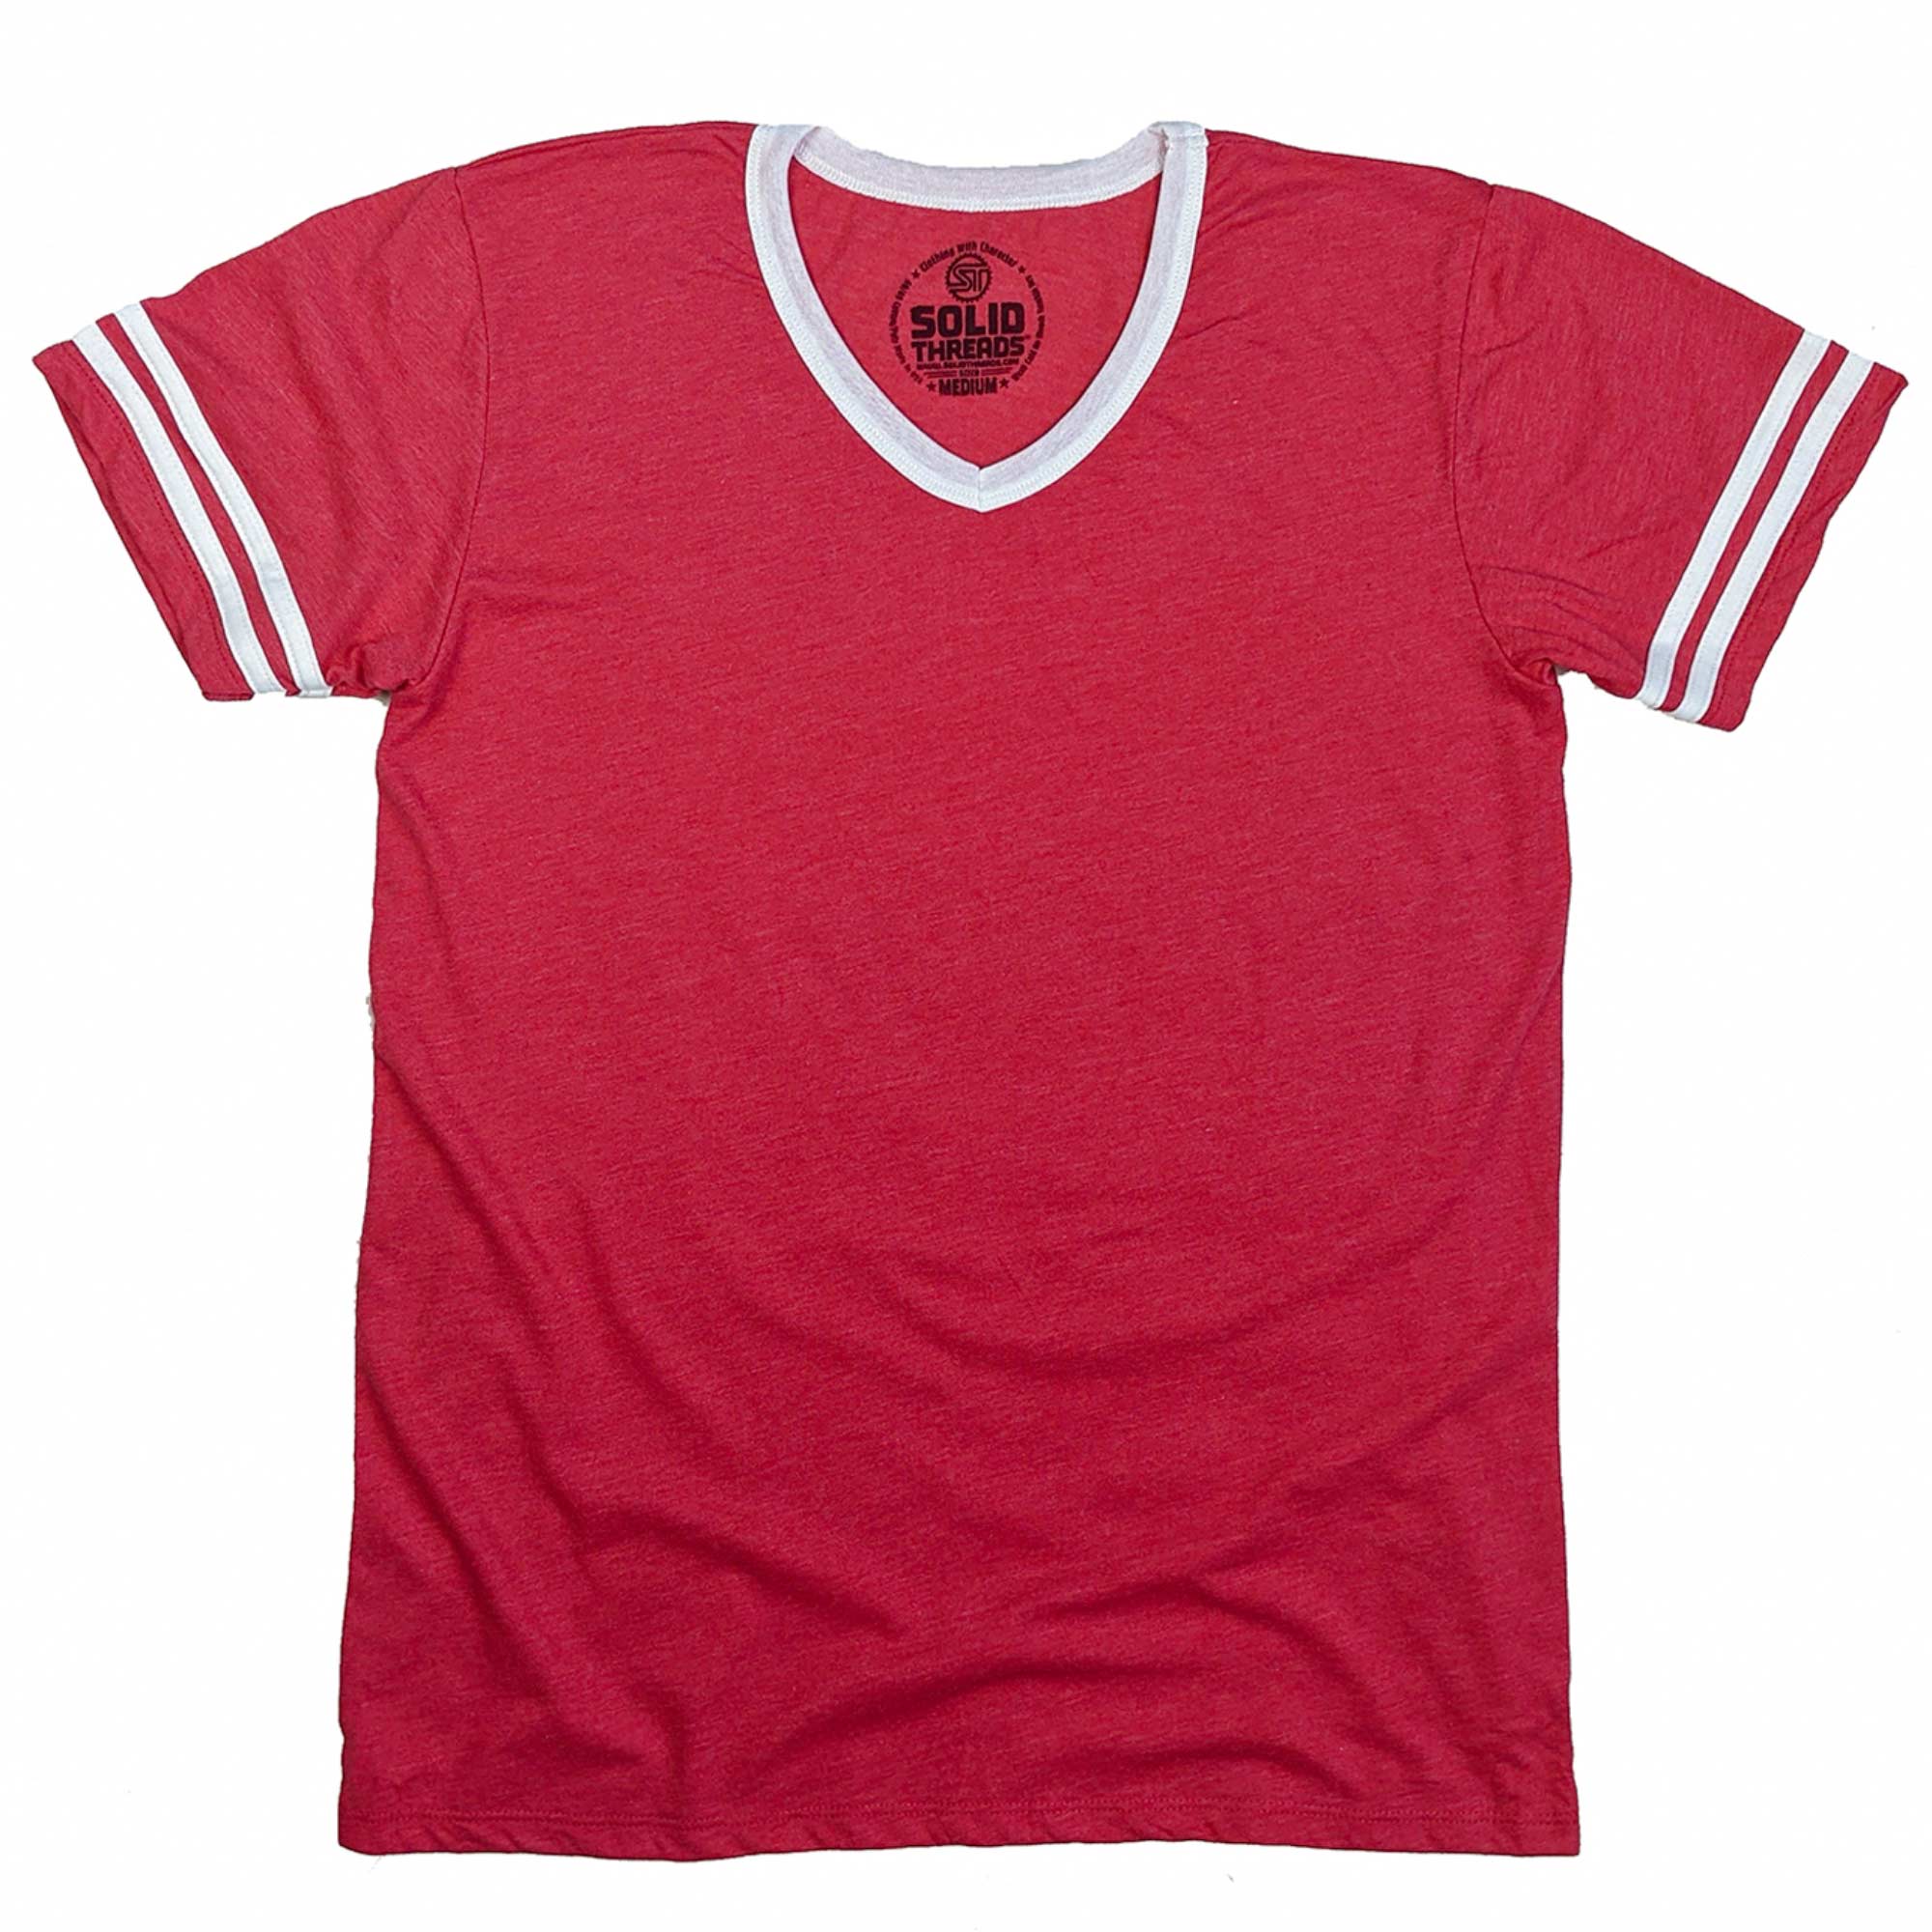 Men's Retro Ringer V-neck T-shirt Red/White | Super Soft Vintage Inspired Tee | USA Made